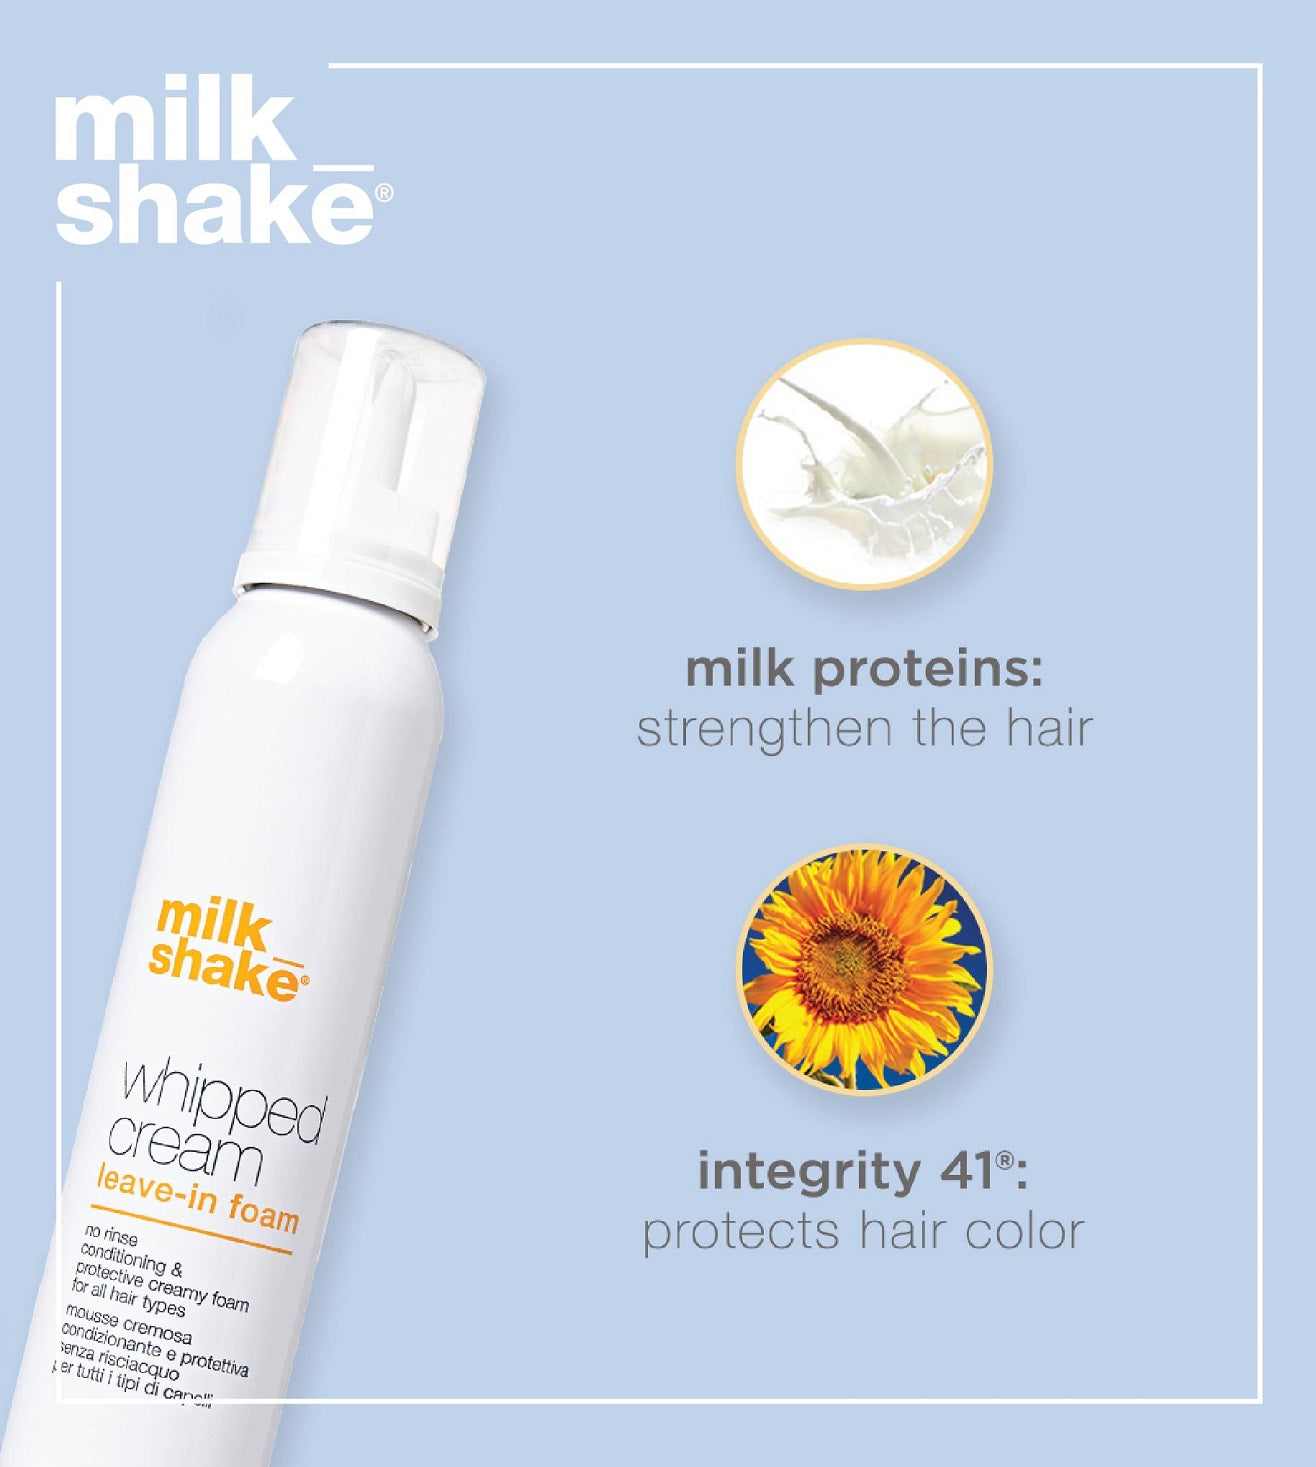 milk_shake® whipped cream